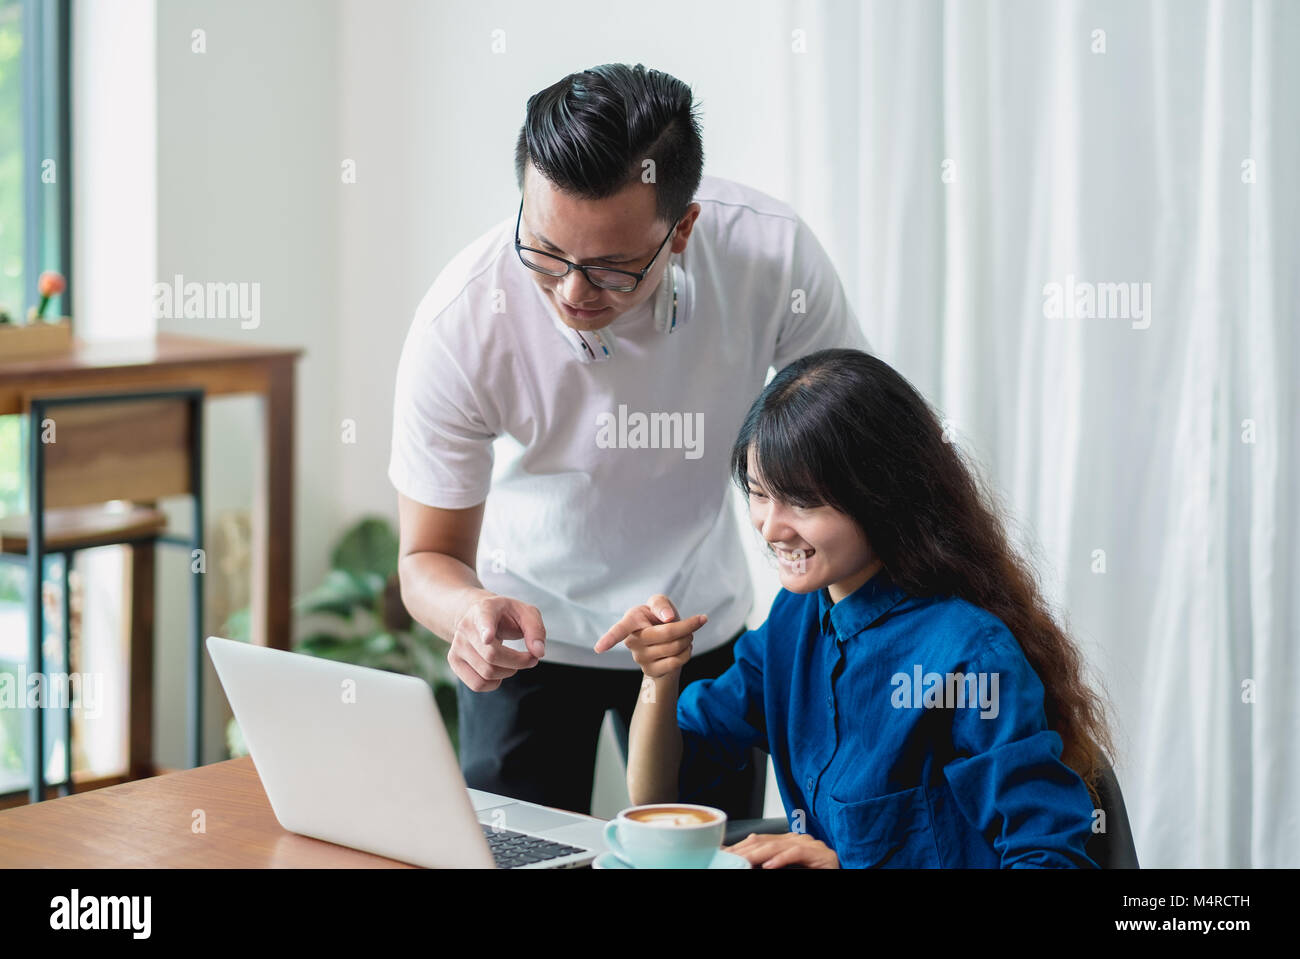 Asiatische Frau und Mann diskutiert mit auf Laptop im Cafe co Arbeitsbereich arbeiten, Digital Lifestyle, Arbeiten außerhalb der Begriff Stockfoto